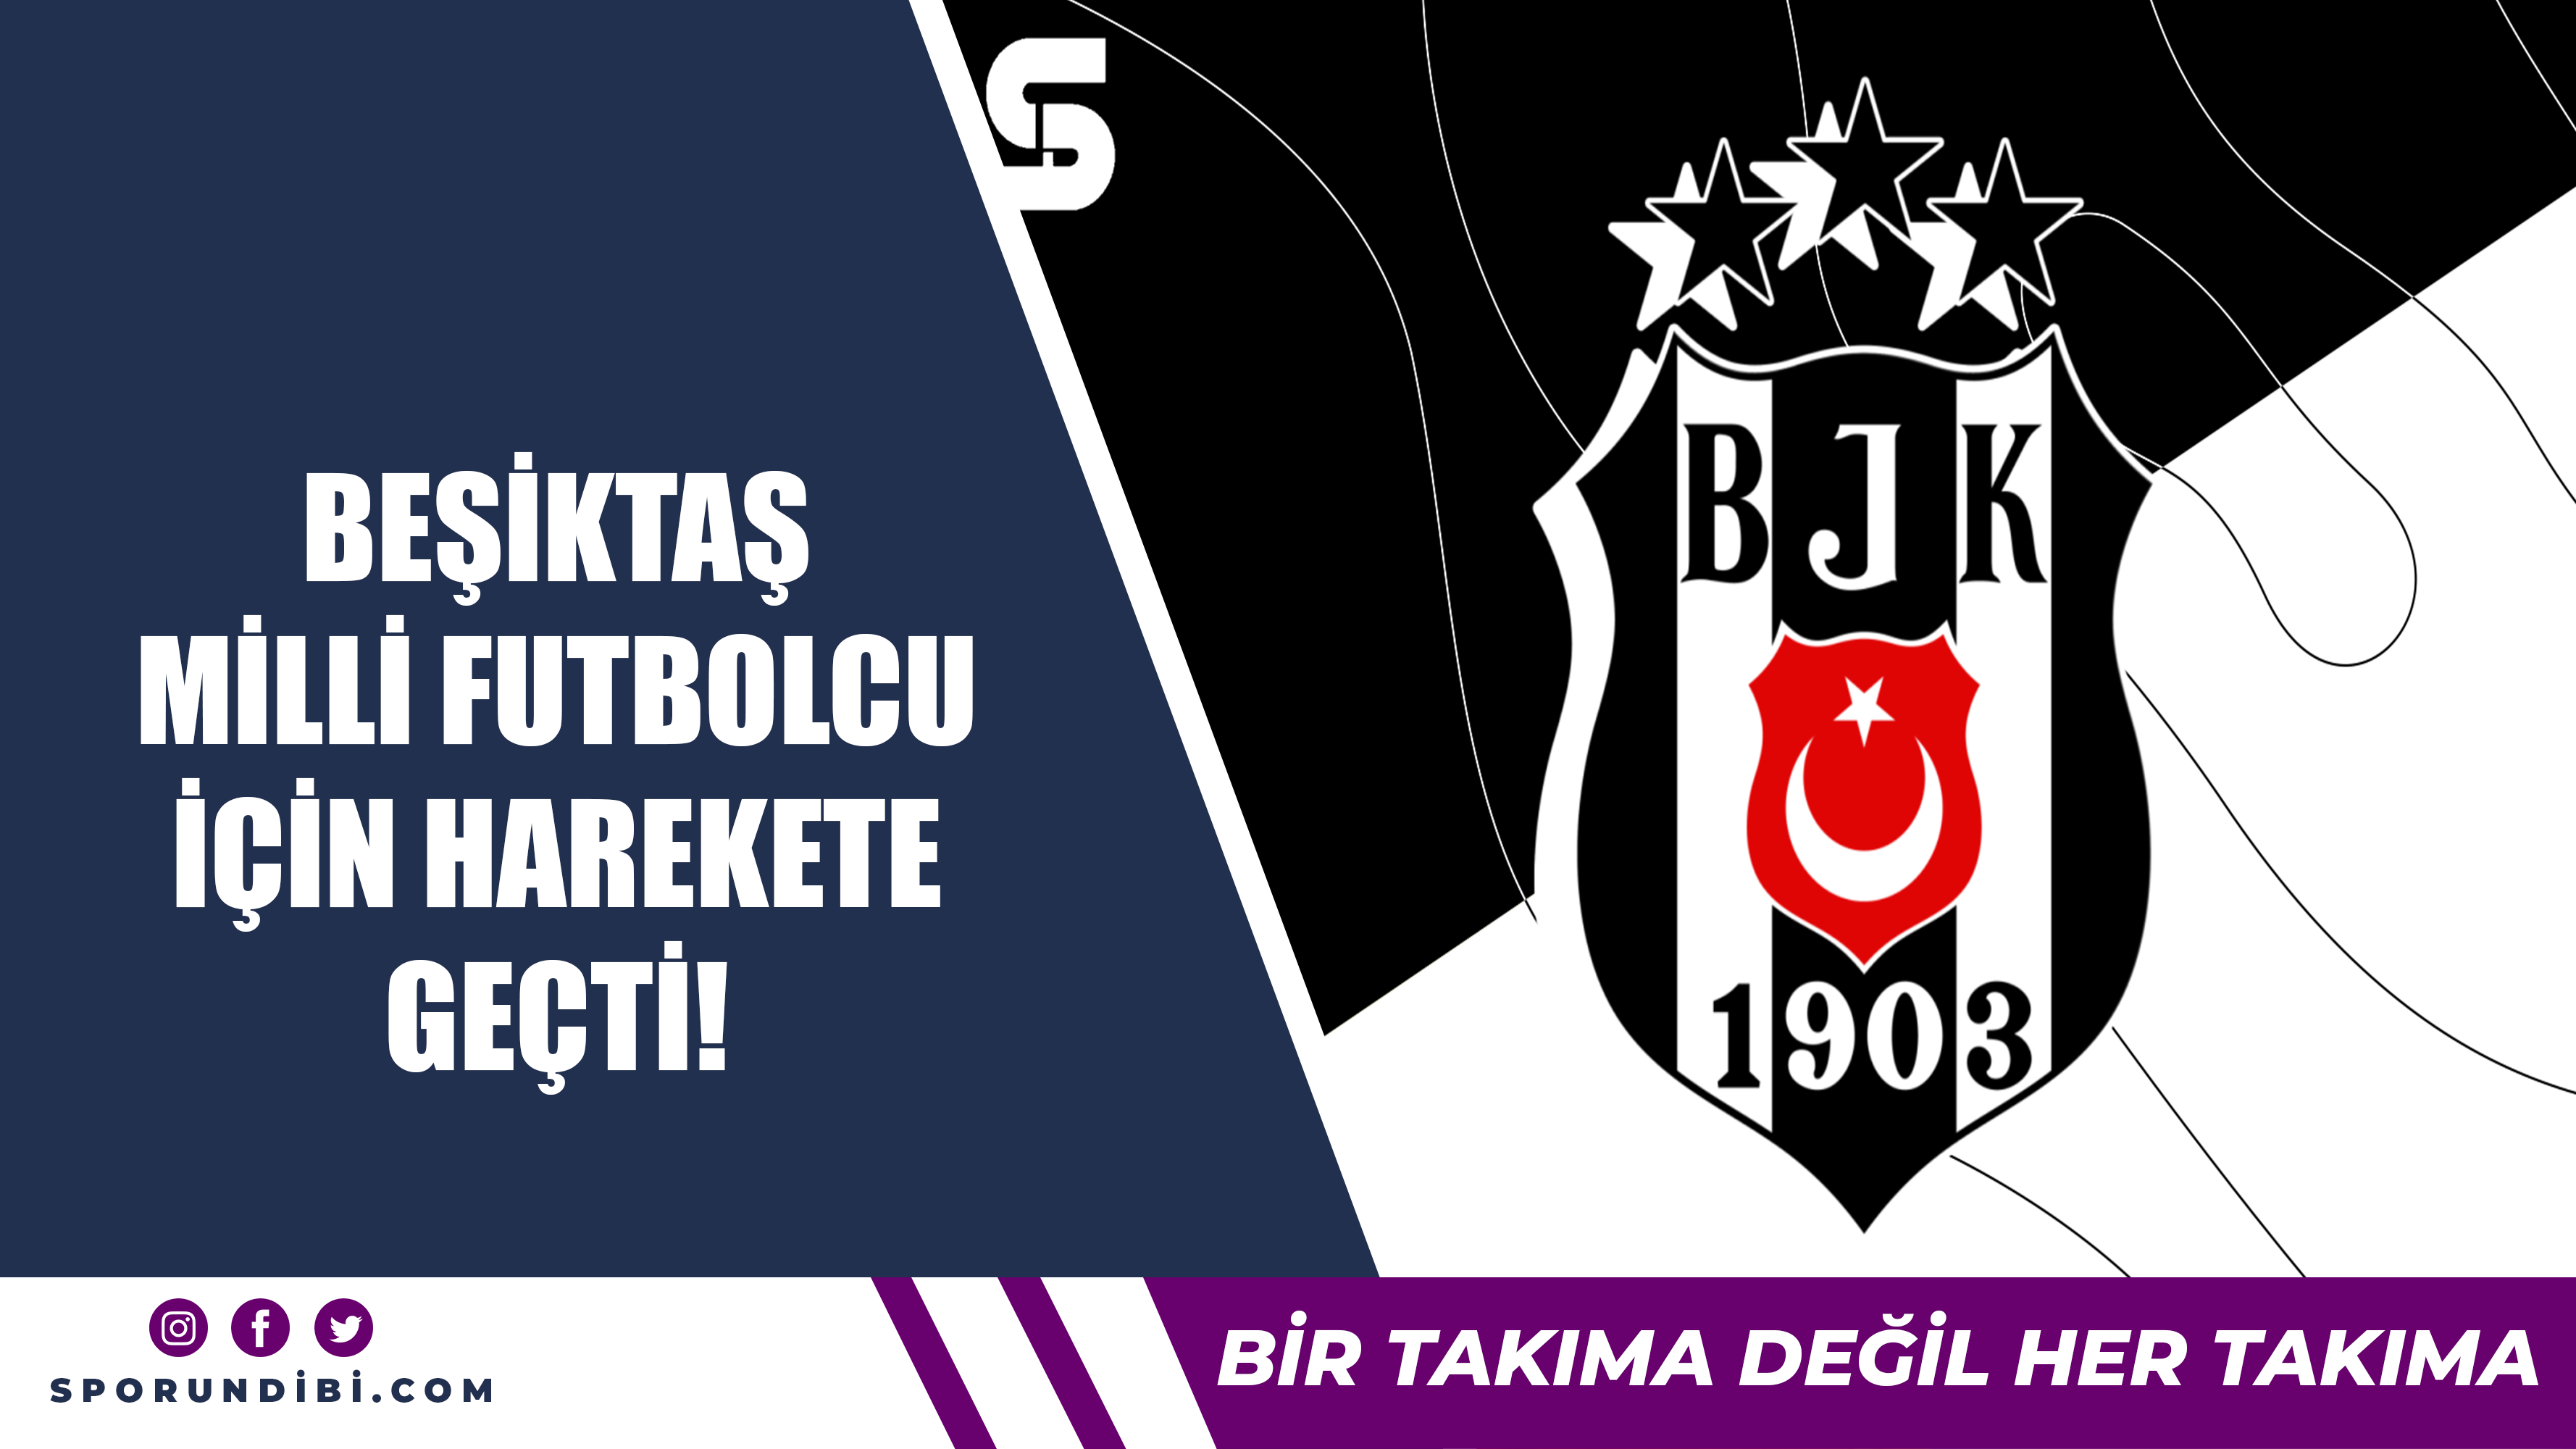 Beşiktaş milli futbolcu için harekete geçti!